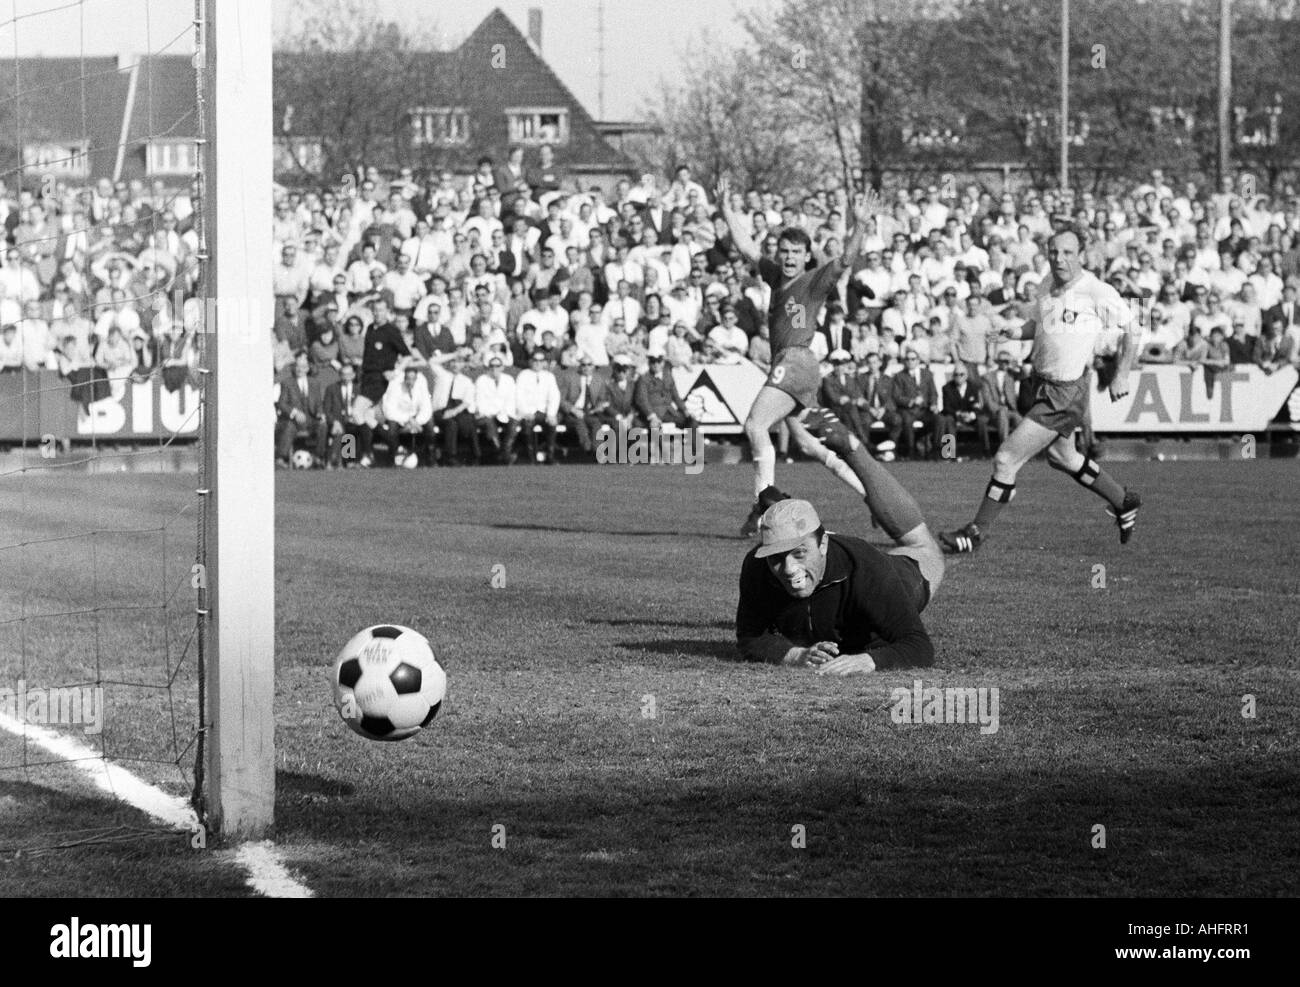 Calcio, Bundesliga, 1967/1968, Boekelberg Stadium, Borussia Moenchengladbach contro Hamburger SV 4:1, scena del match, Herbert Laumen (MG) gioia al suo 2:0 obiettivo di Gladbach, custode Arkoc Oezcan e Uwe Seeler (sia HSV) guarda dopo la sfera Foto Stock